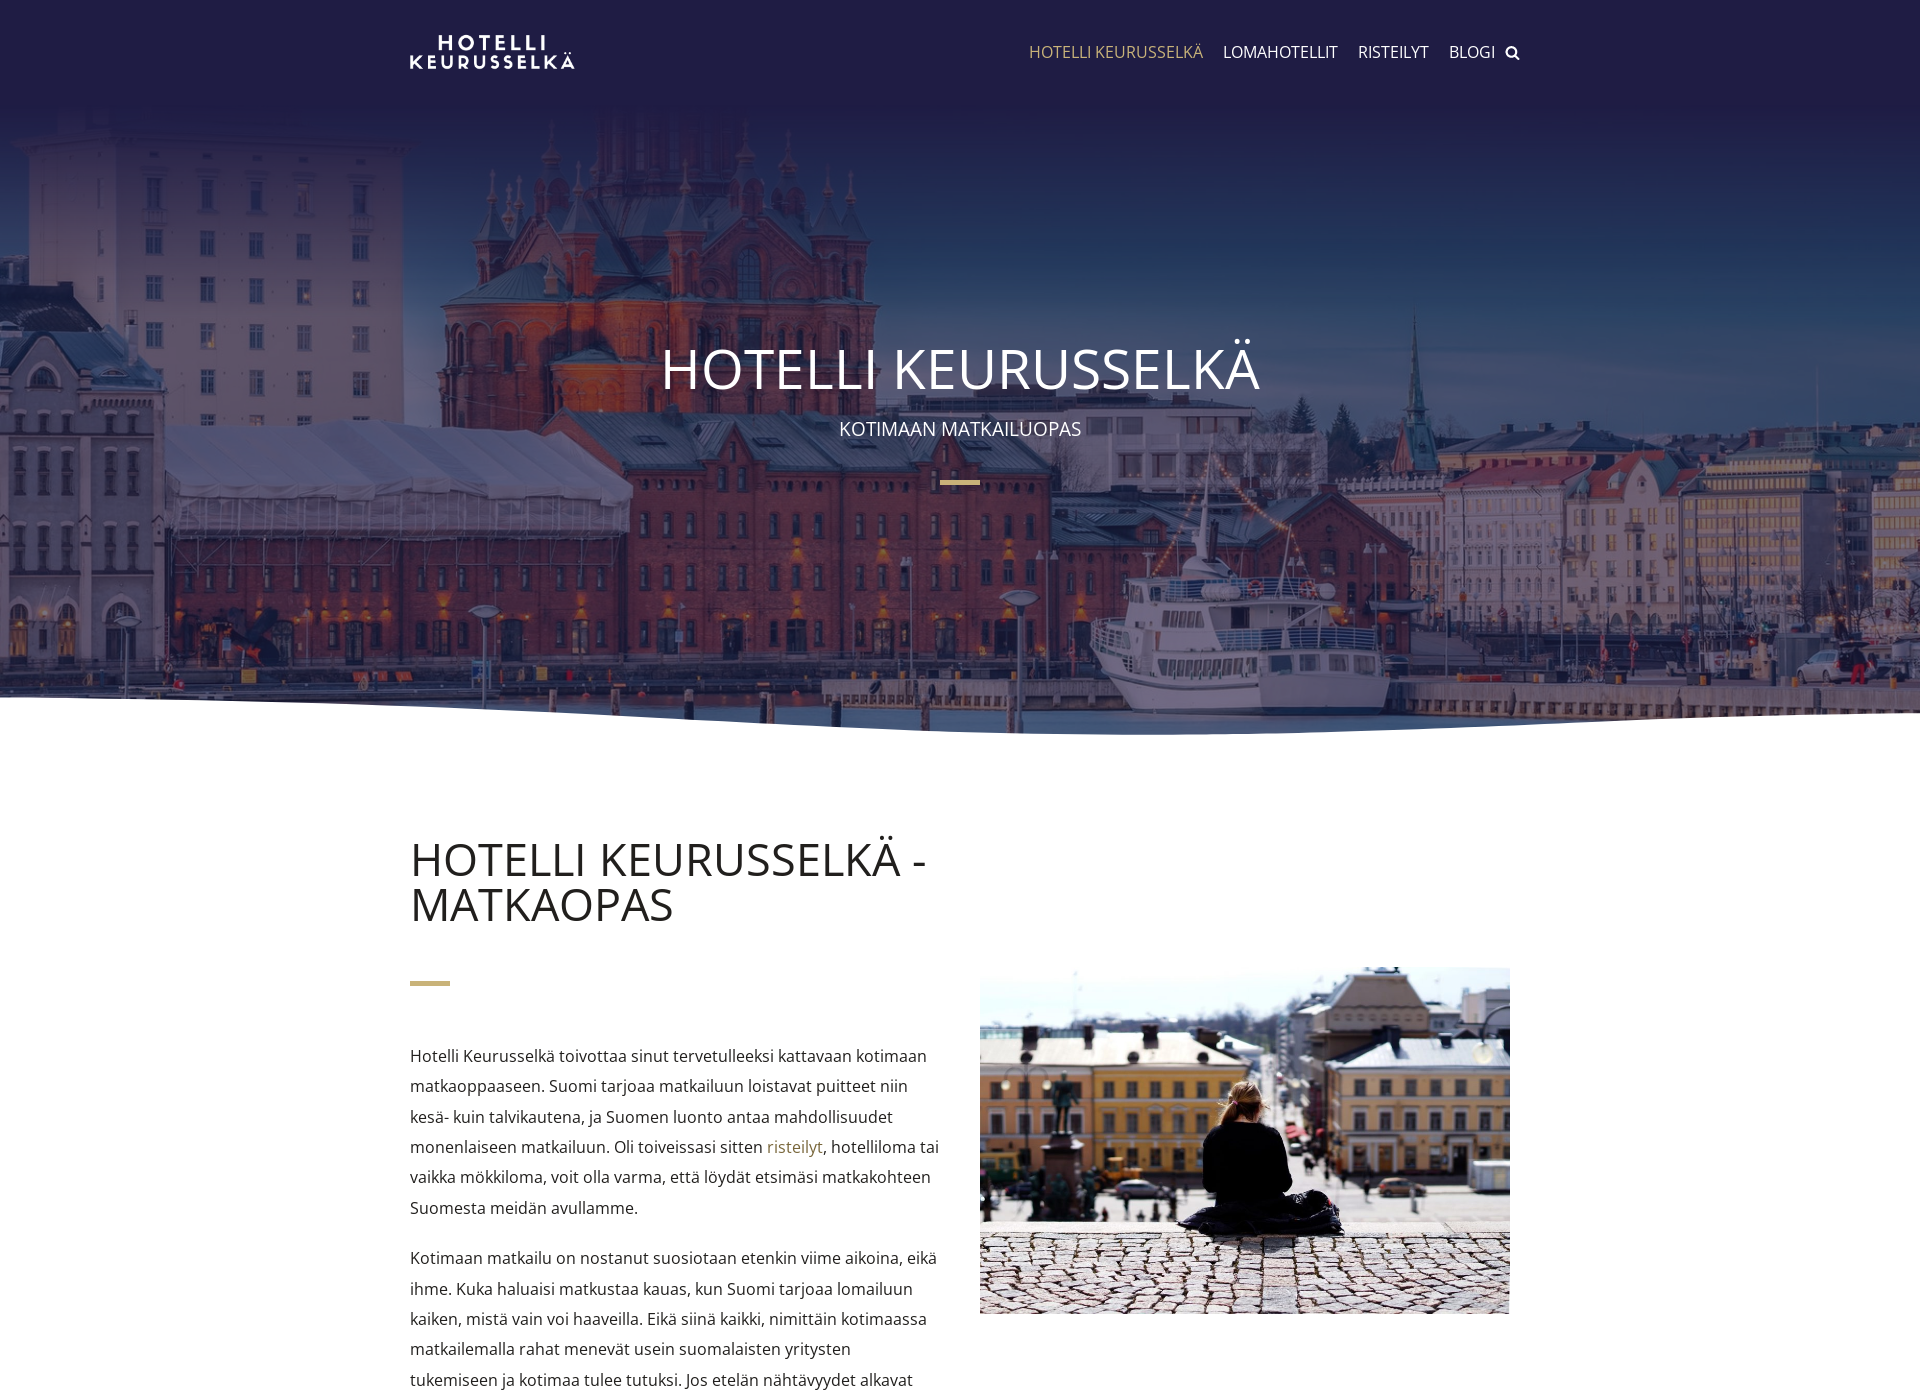 Näyttökuva hotellikeurusselka.fi